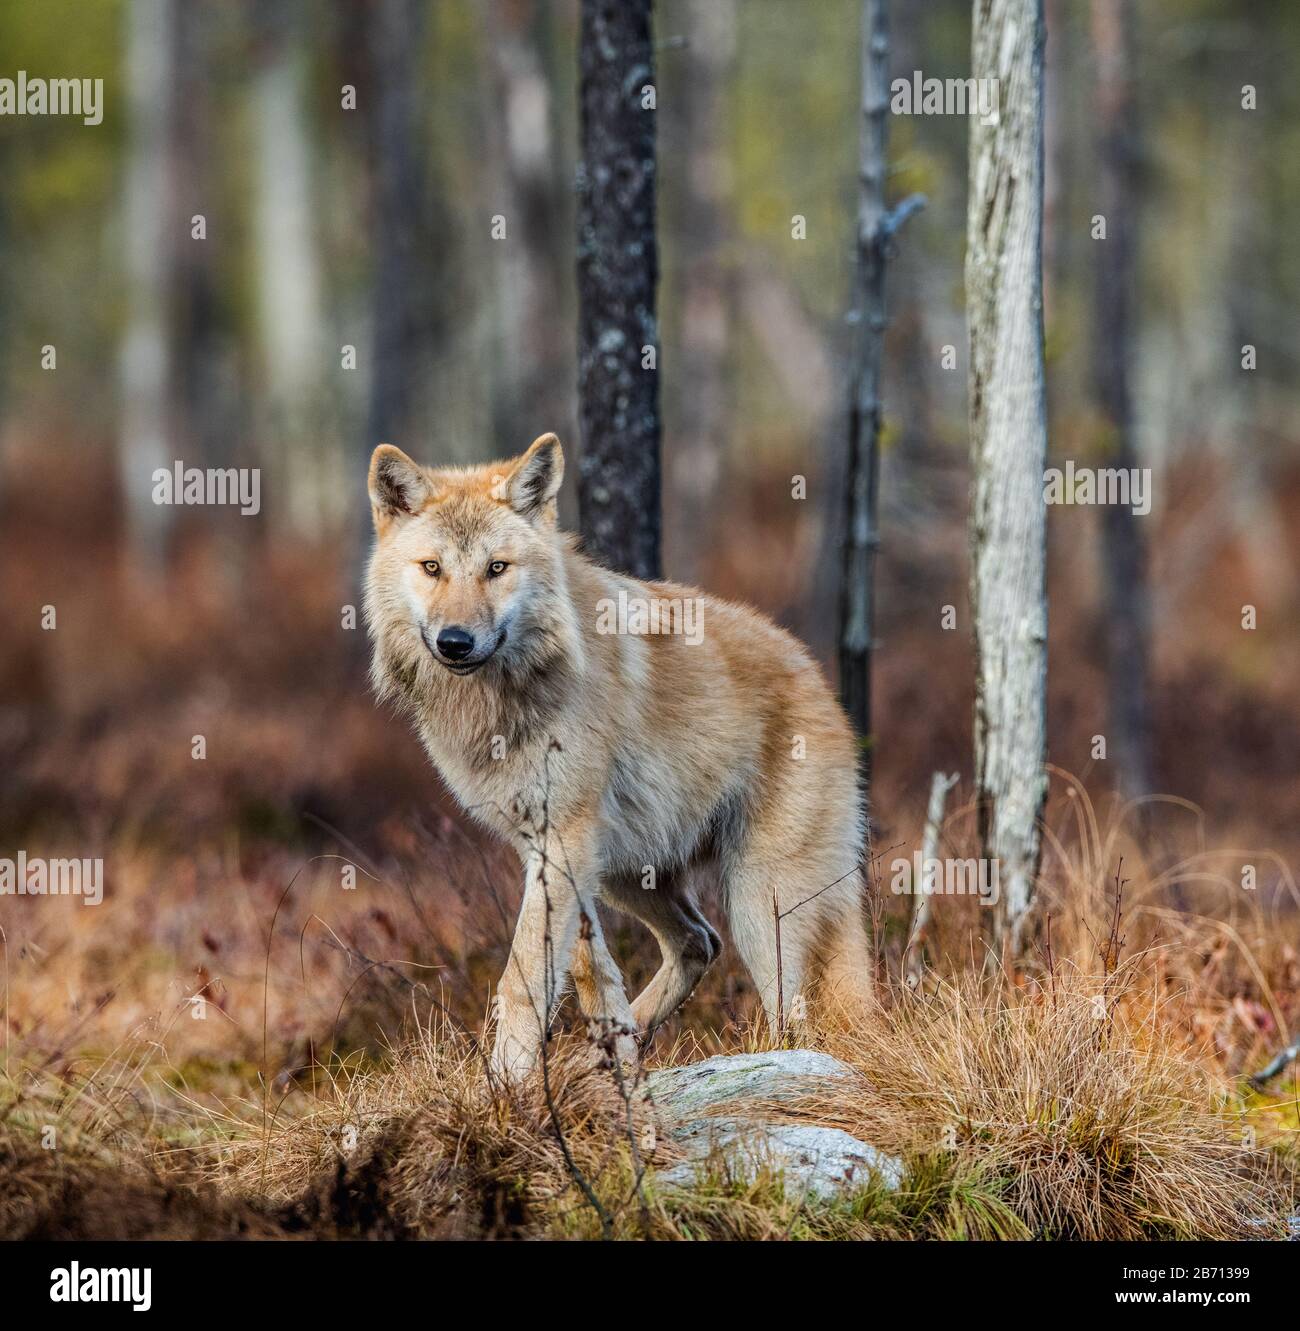 Loup eurasien, également connu sous le nom de loup gris ou gris, également connu sous le nom de loup de bois. Nom scientifique: Canis lupus lupus. Habitat naturel. Forêt d'automne. Banque D'Images